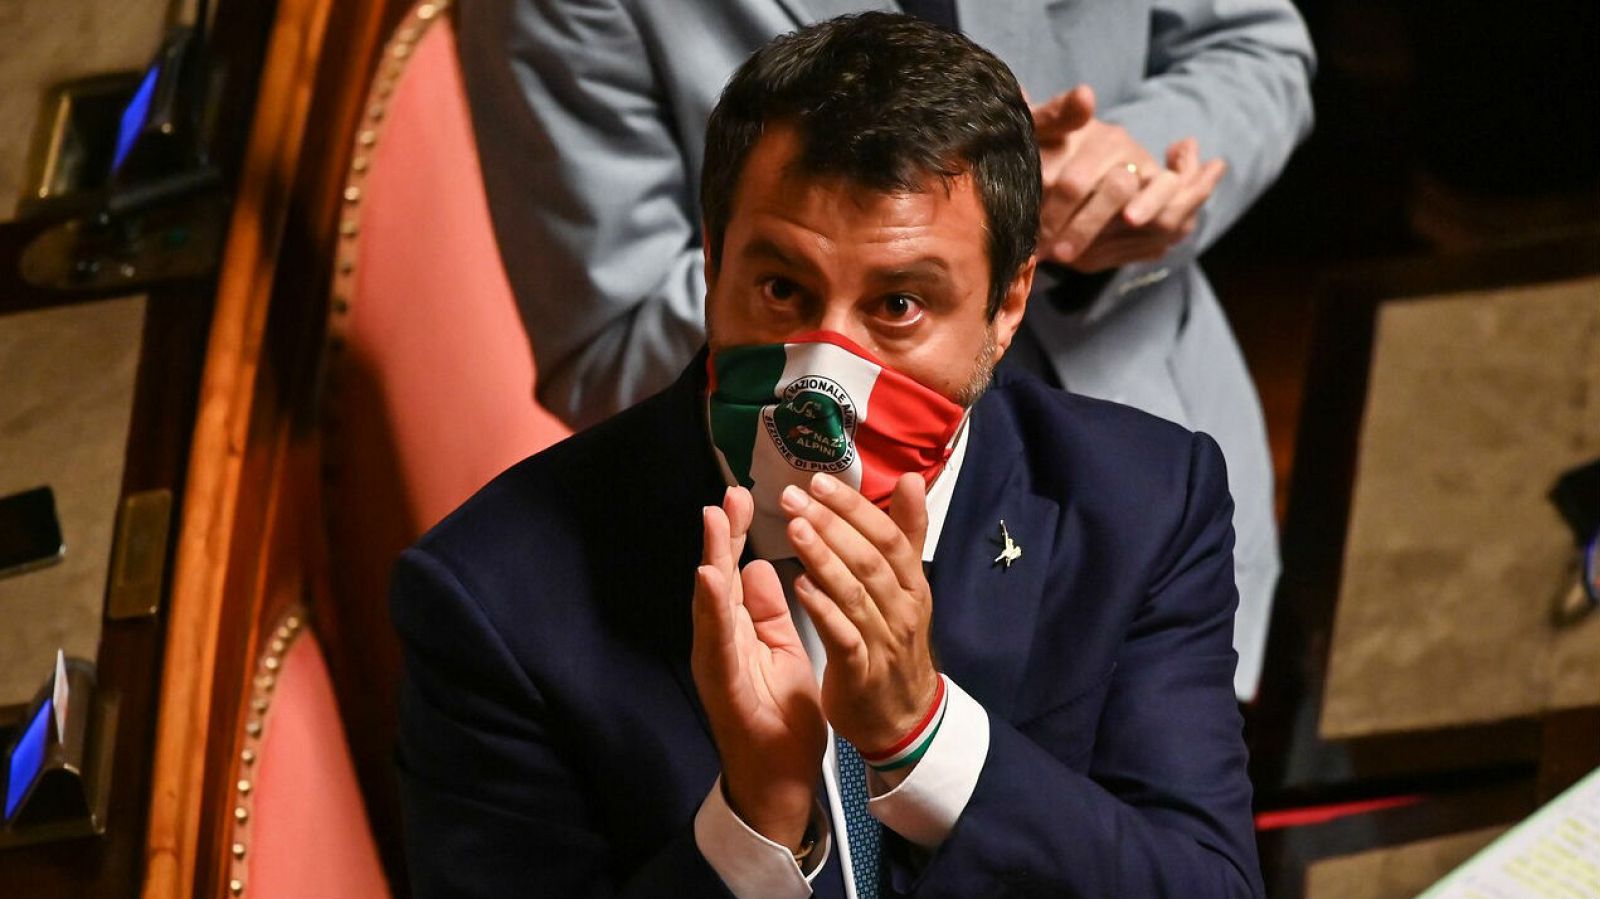 El senador italiano y líder del partido Lega, Matteo Salvini, tras su discurso el 30 de julio en el Senado antes de las votaciones sobre si debería ser despojado de su inmunidad parlamentaria.